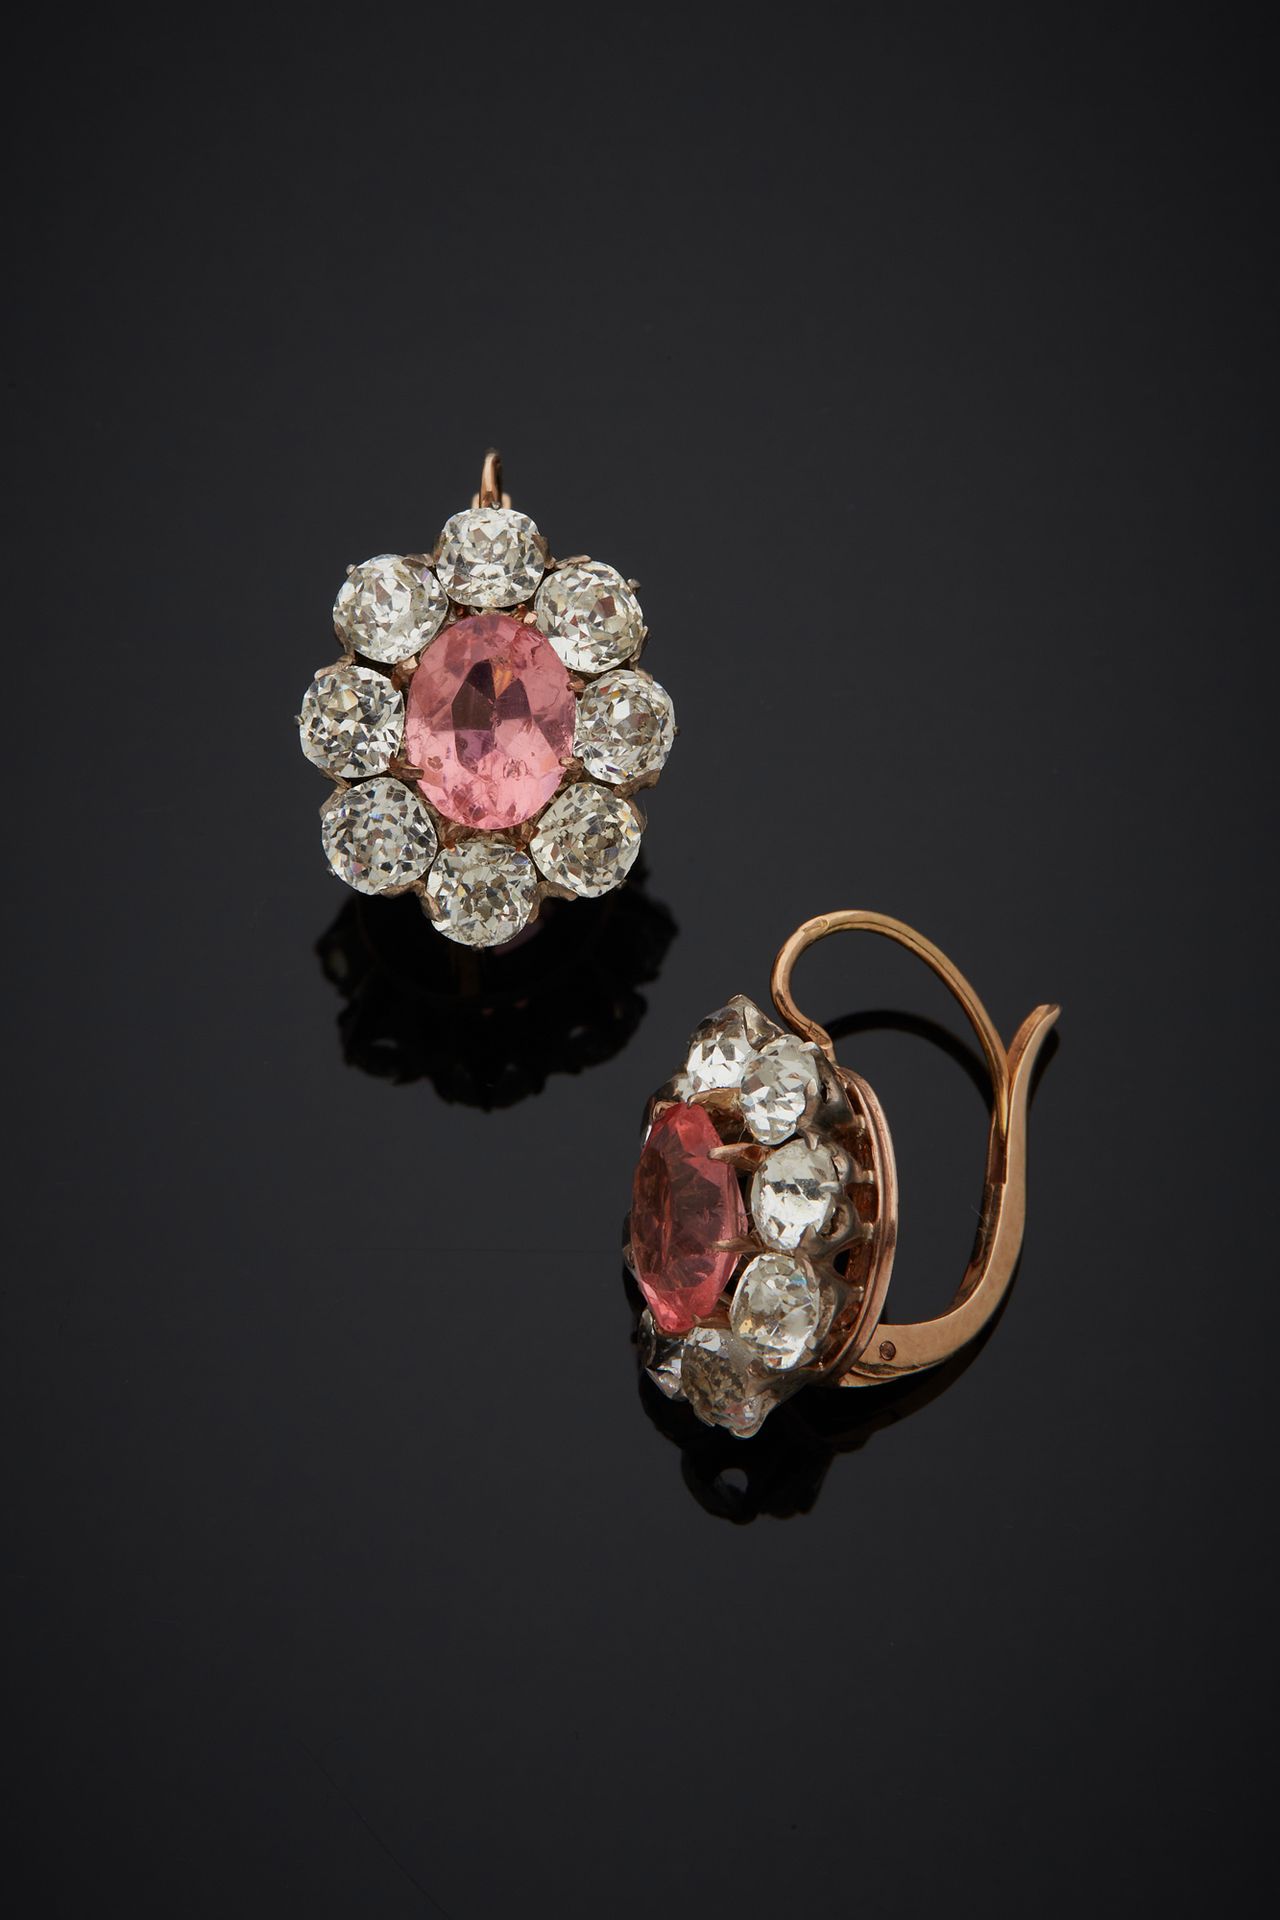 Null 一对18K黄金750‰的椭圆型卧蚕耳环，在白色宝石的环绕中镶嵌了一颗粉红色的宝石。

H.1.80 cm 毛重 4.70 g